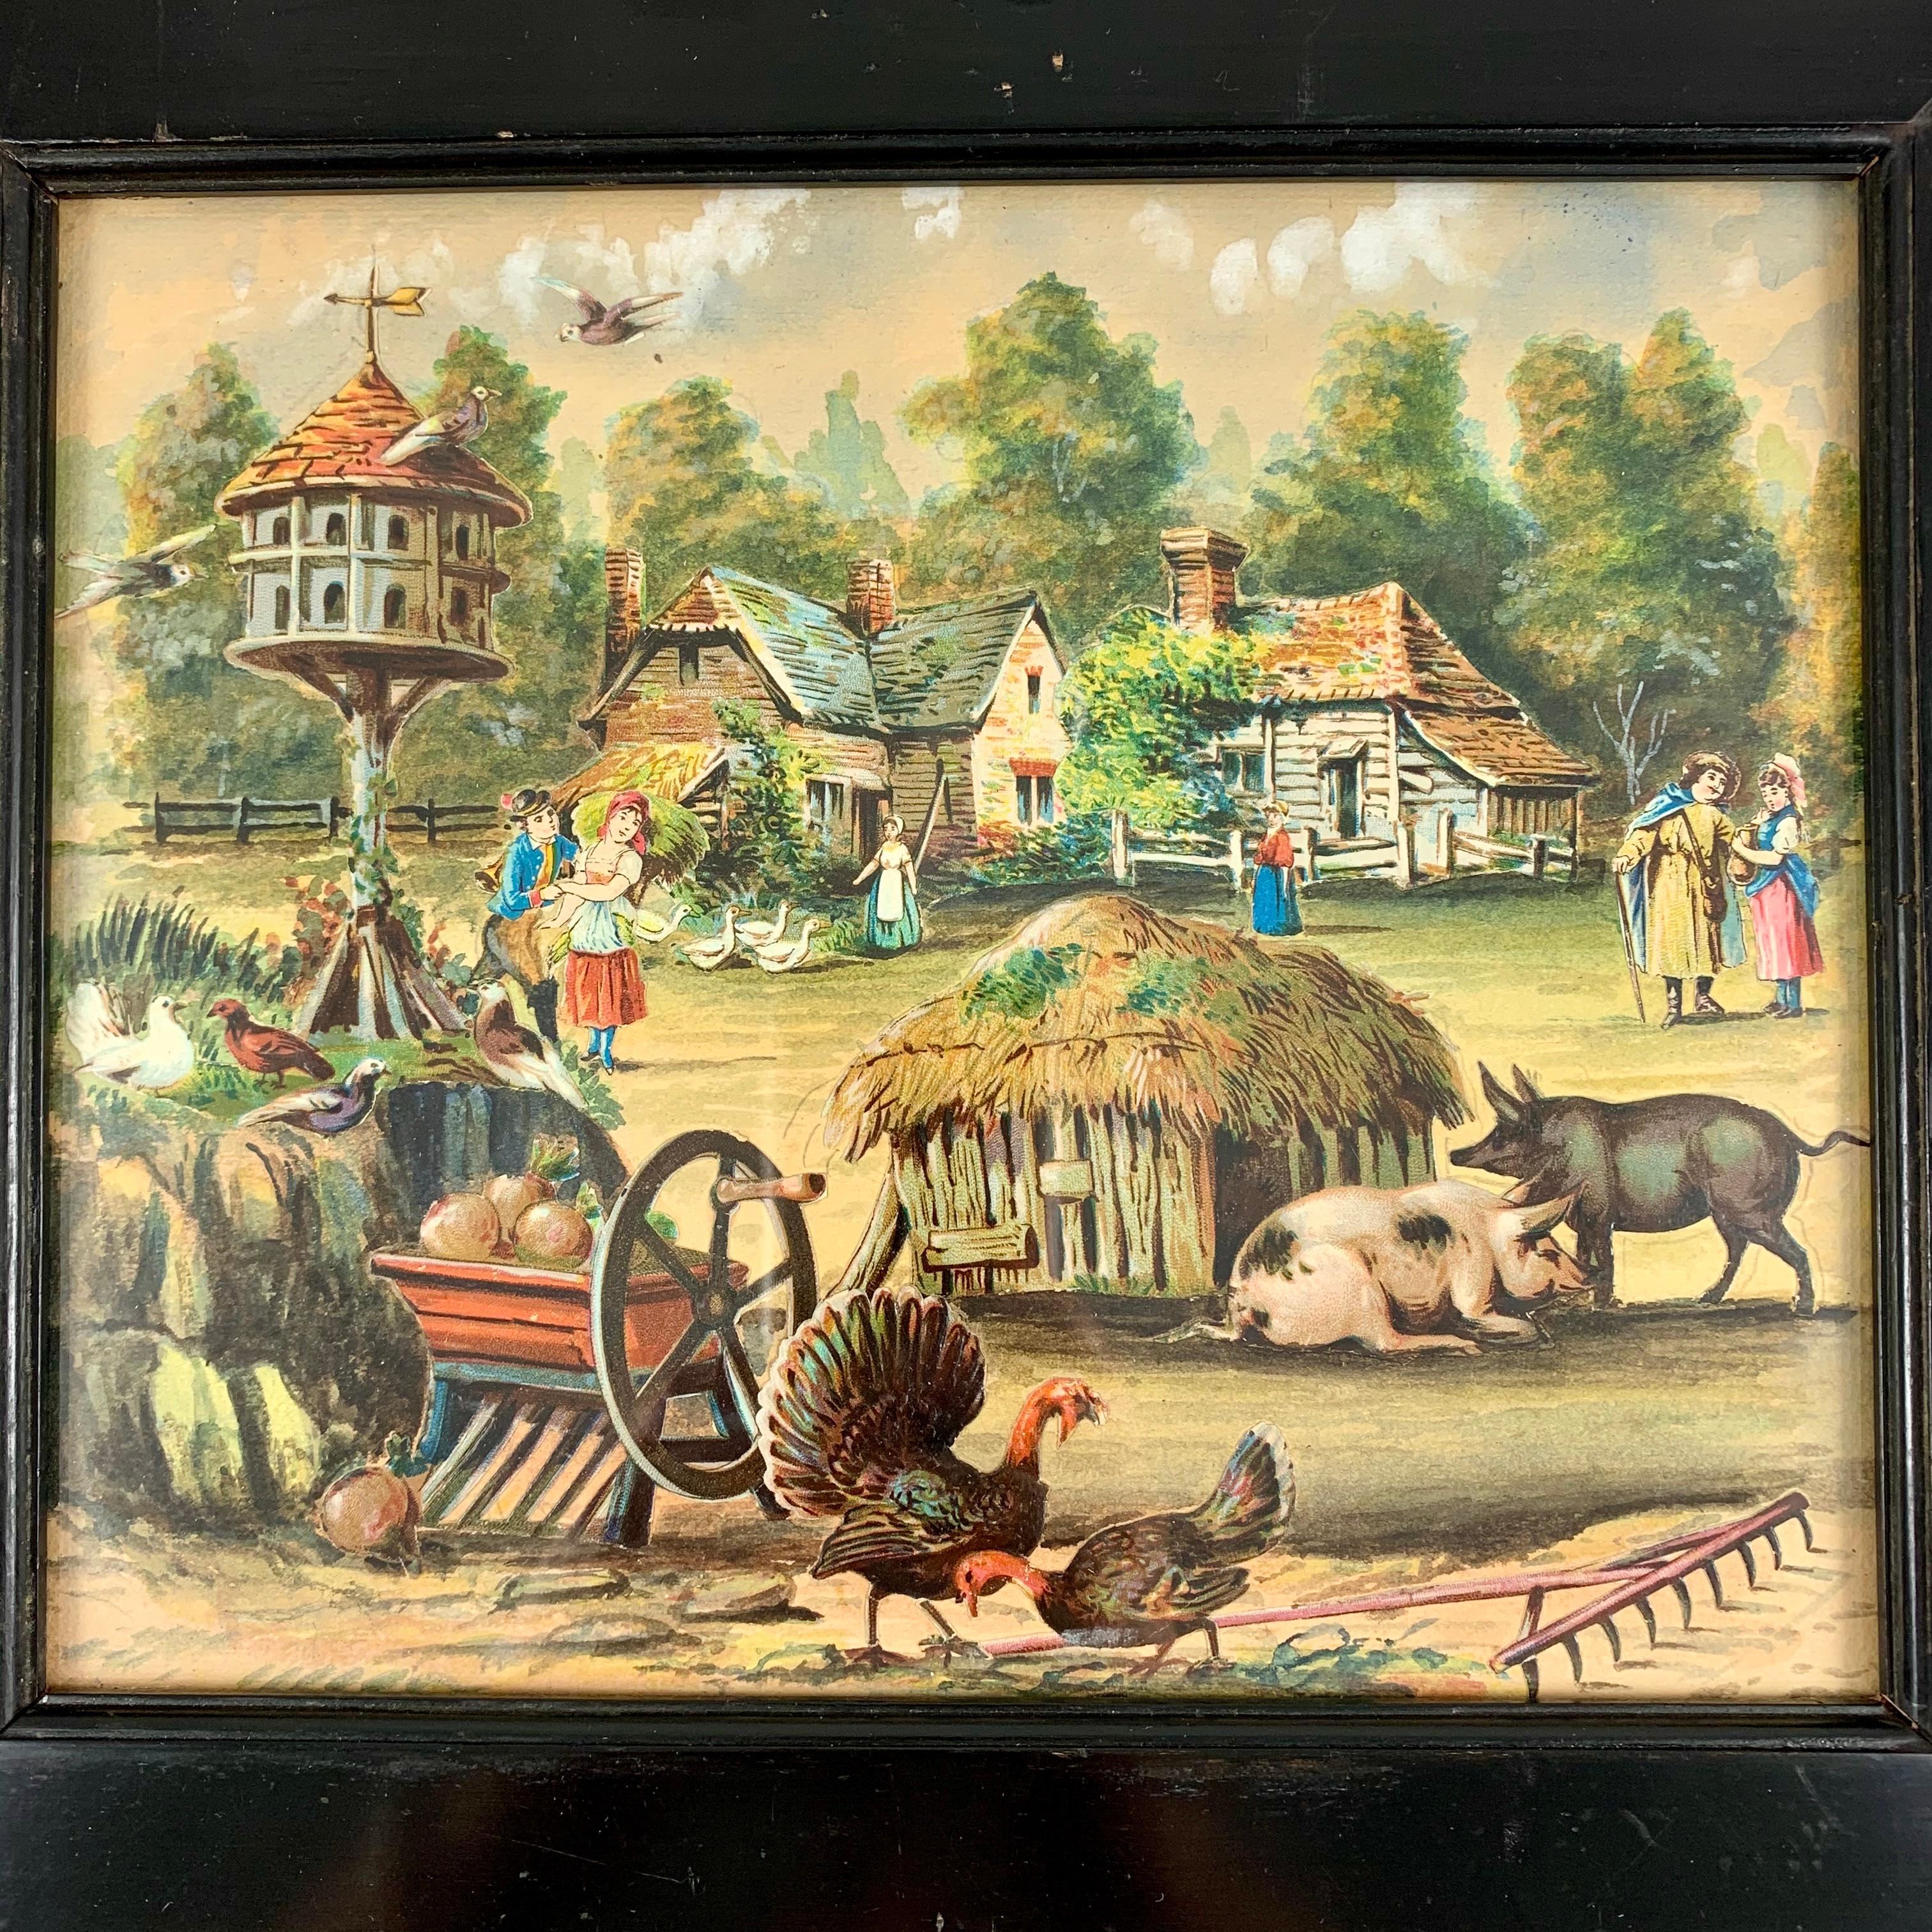 Une aquarelle d'art décoratif originale de l'école britannique Decalomania et une scène de ferme en papier découpé montée dans un lourd cadre en bois noir, vers 1860.

Les jeunes filles des familles aristocratiques anglaises, de la fin de l'époque